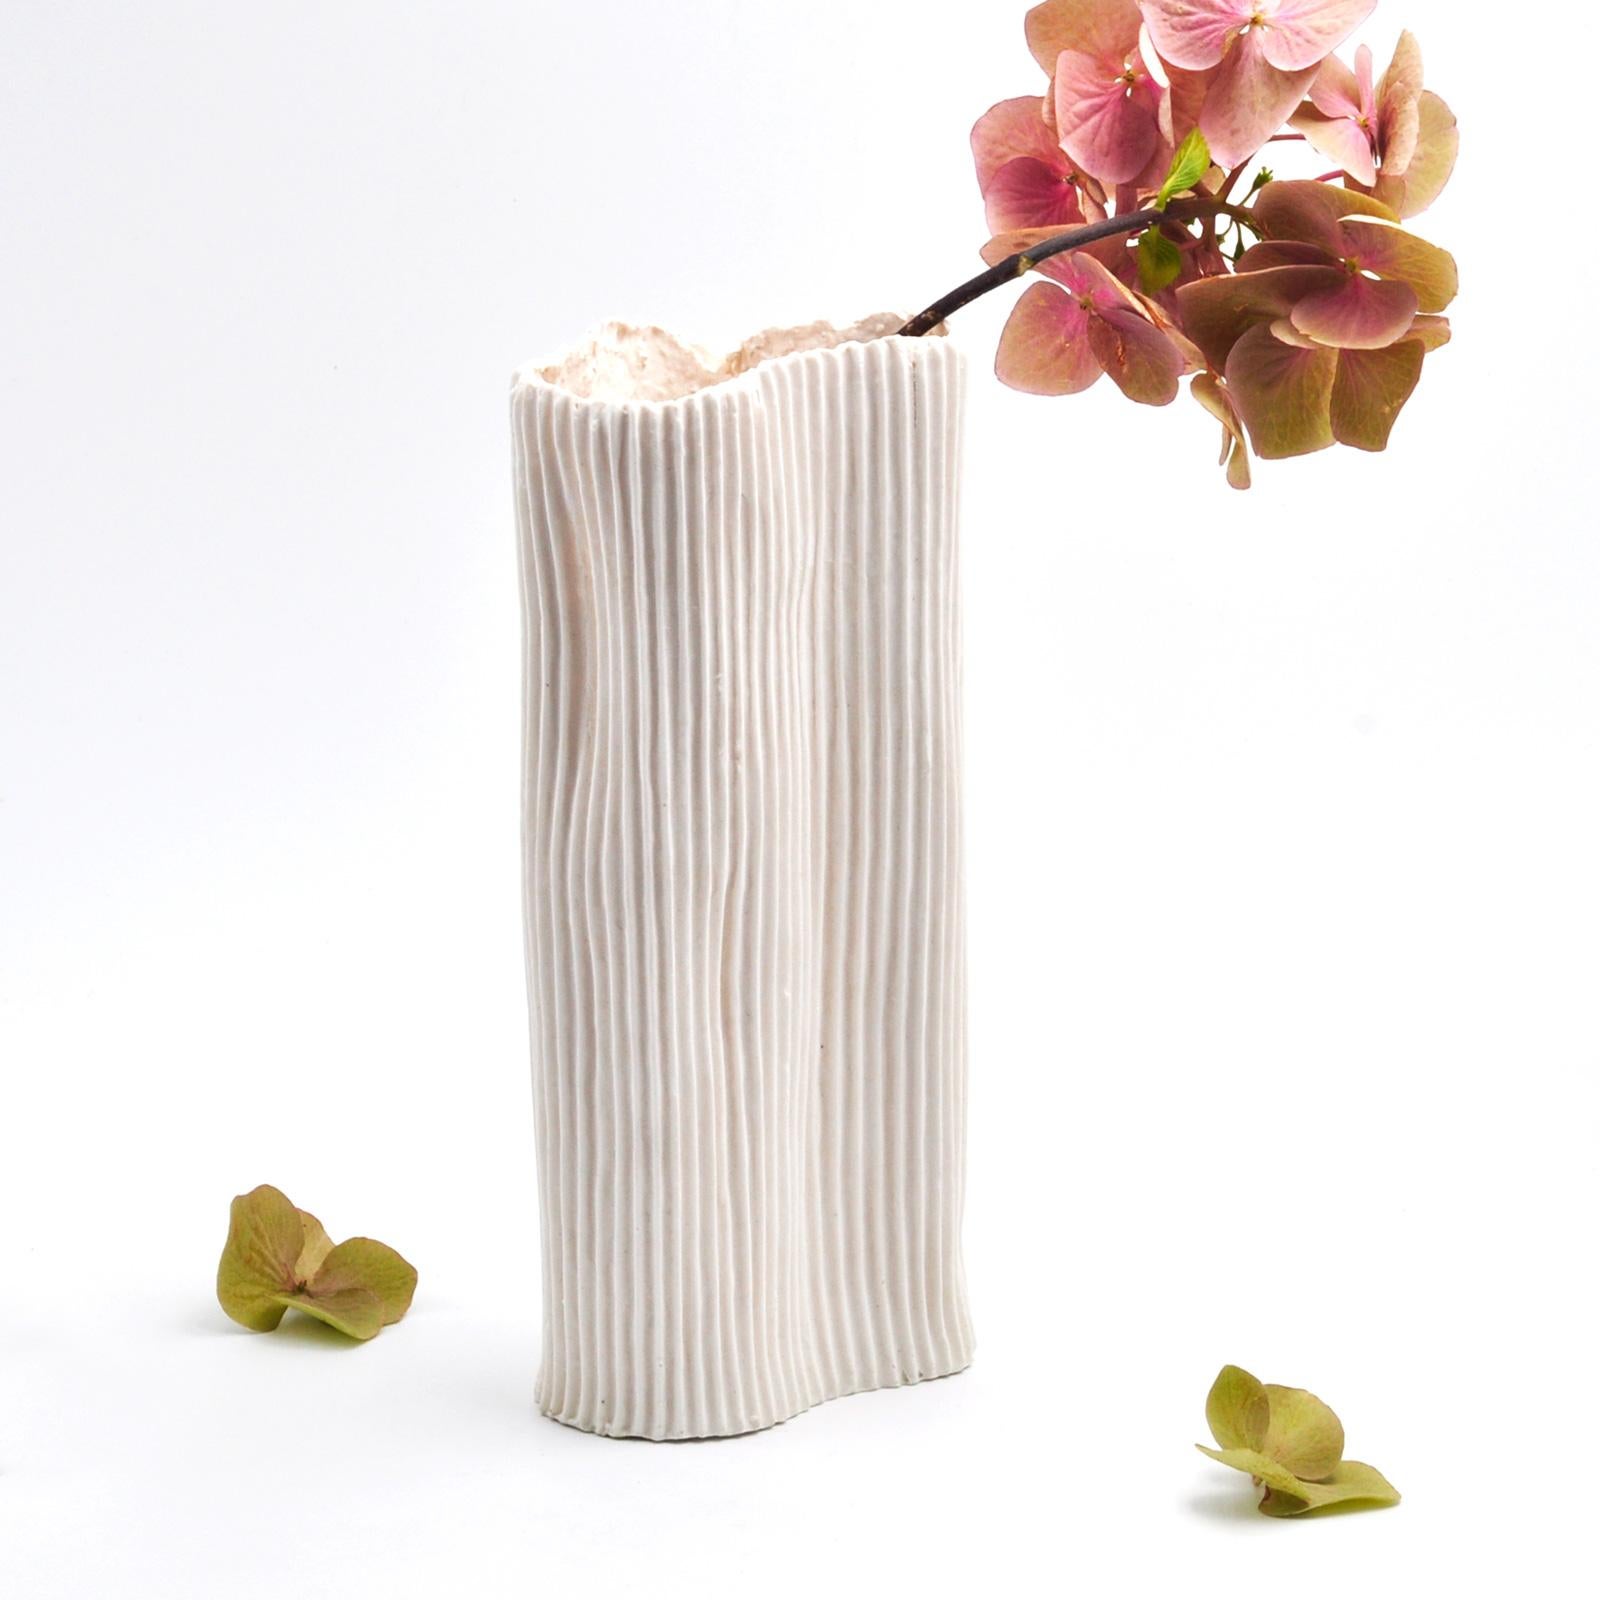 Questo elegante  vaso in porcellana  e paperclay fa parte di Paesaggio 9, la serie di  tre vasi della  nostra collezione esclusiva Paesaggio sotto la luna. 
Ideato da Nino Basso designer,   il vaso  ha un design essenziale e una texture di colore